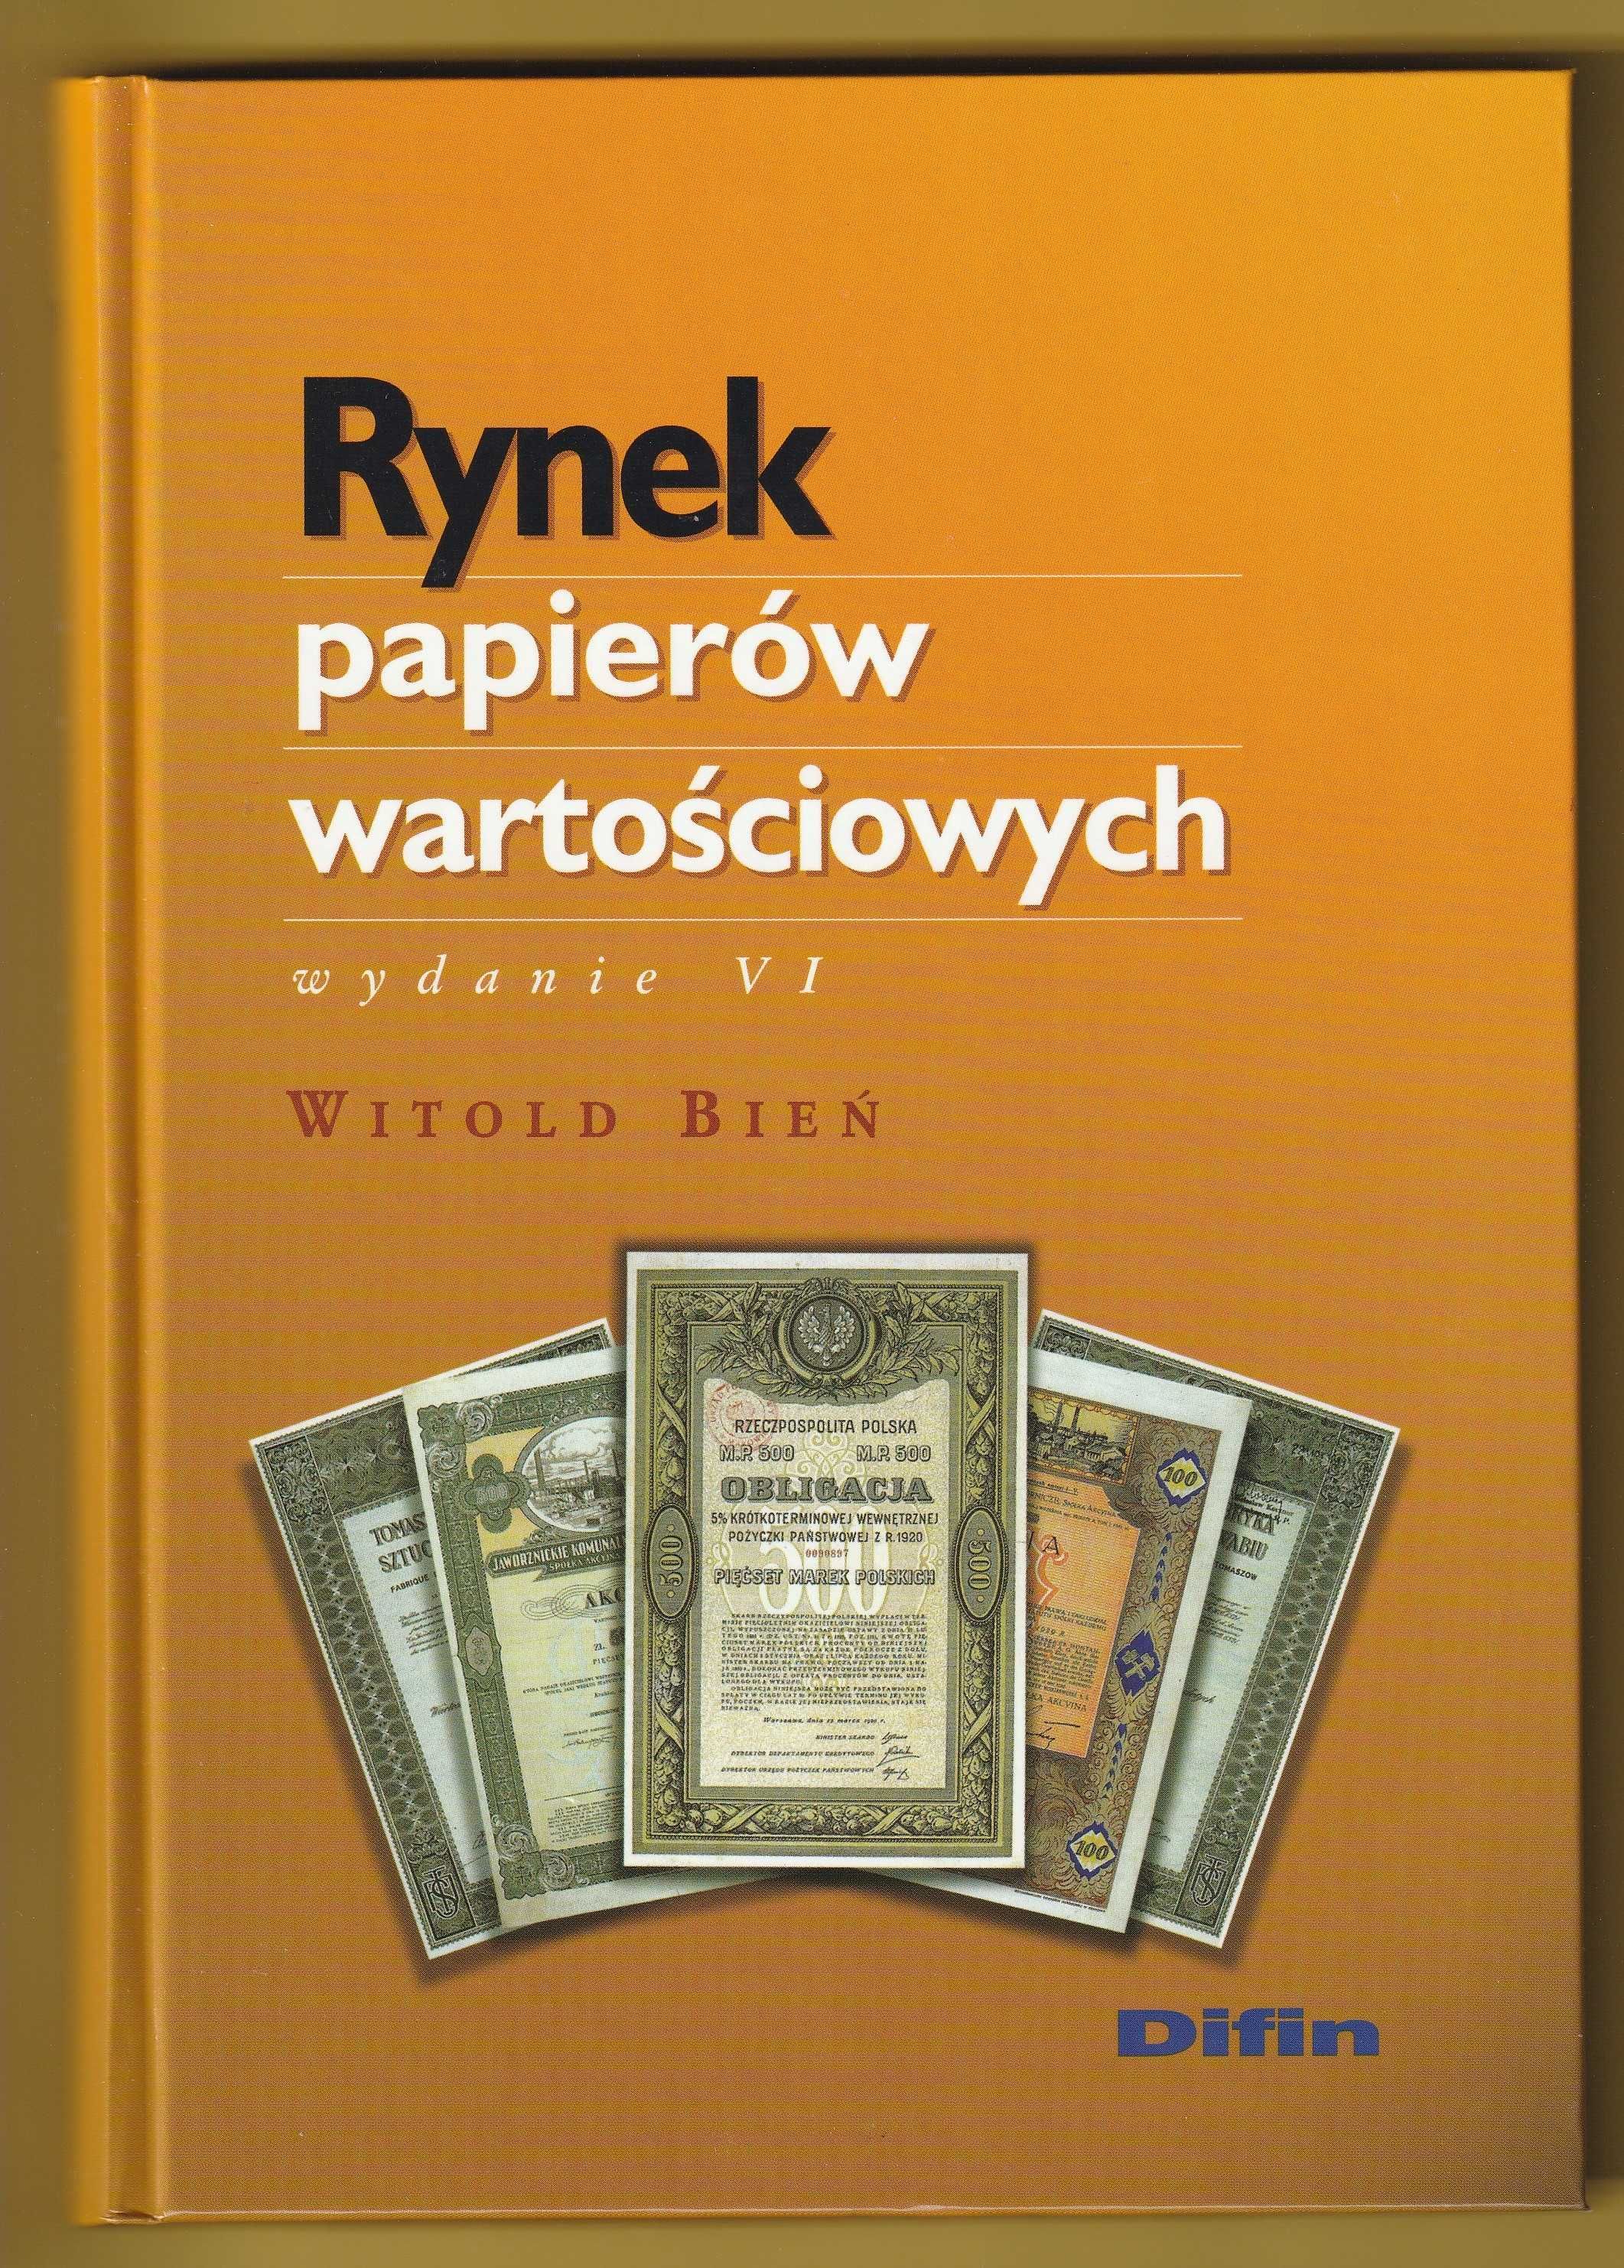 Rynek papierów wartościowych - Witold Bień - 2004